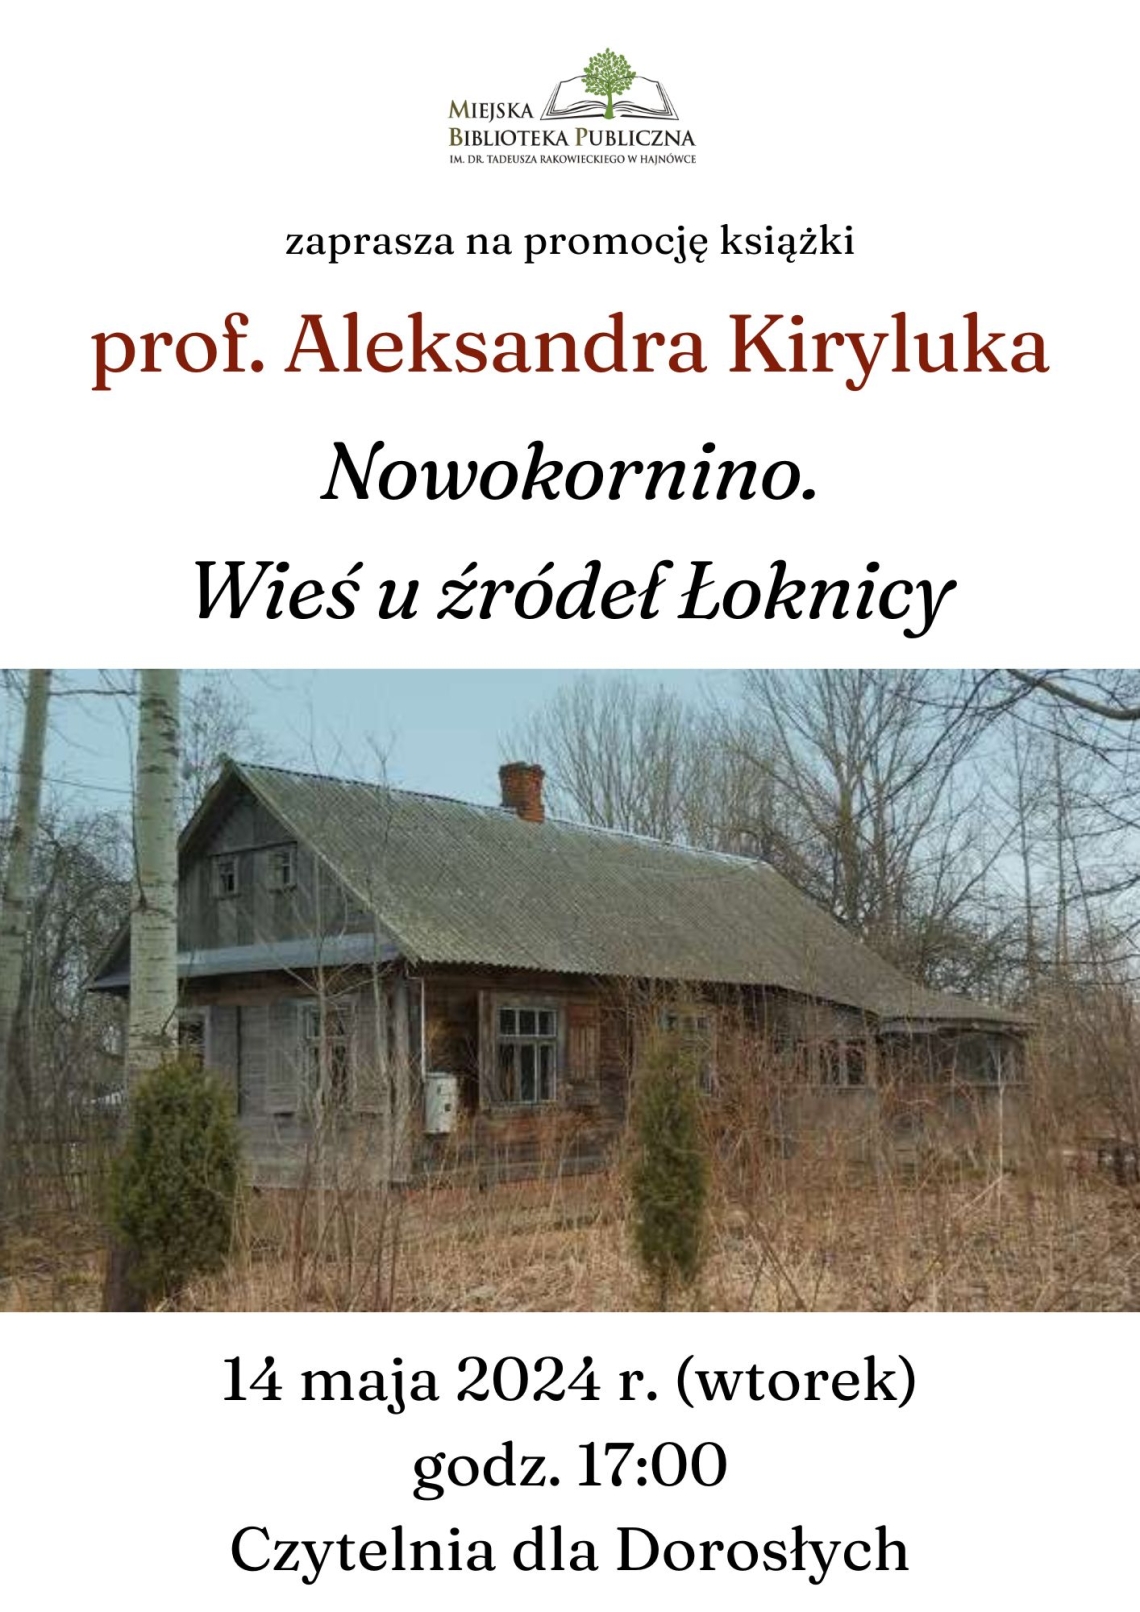 plakat zapowiadający promocję księżki prof. Aleksandra Kiryluka "Nowokornino. Wieś u źródeł Łoknicy"